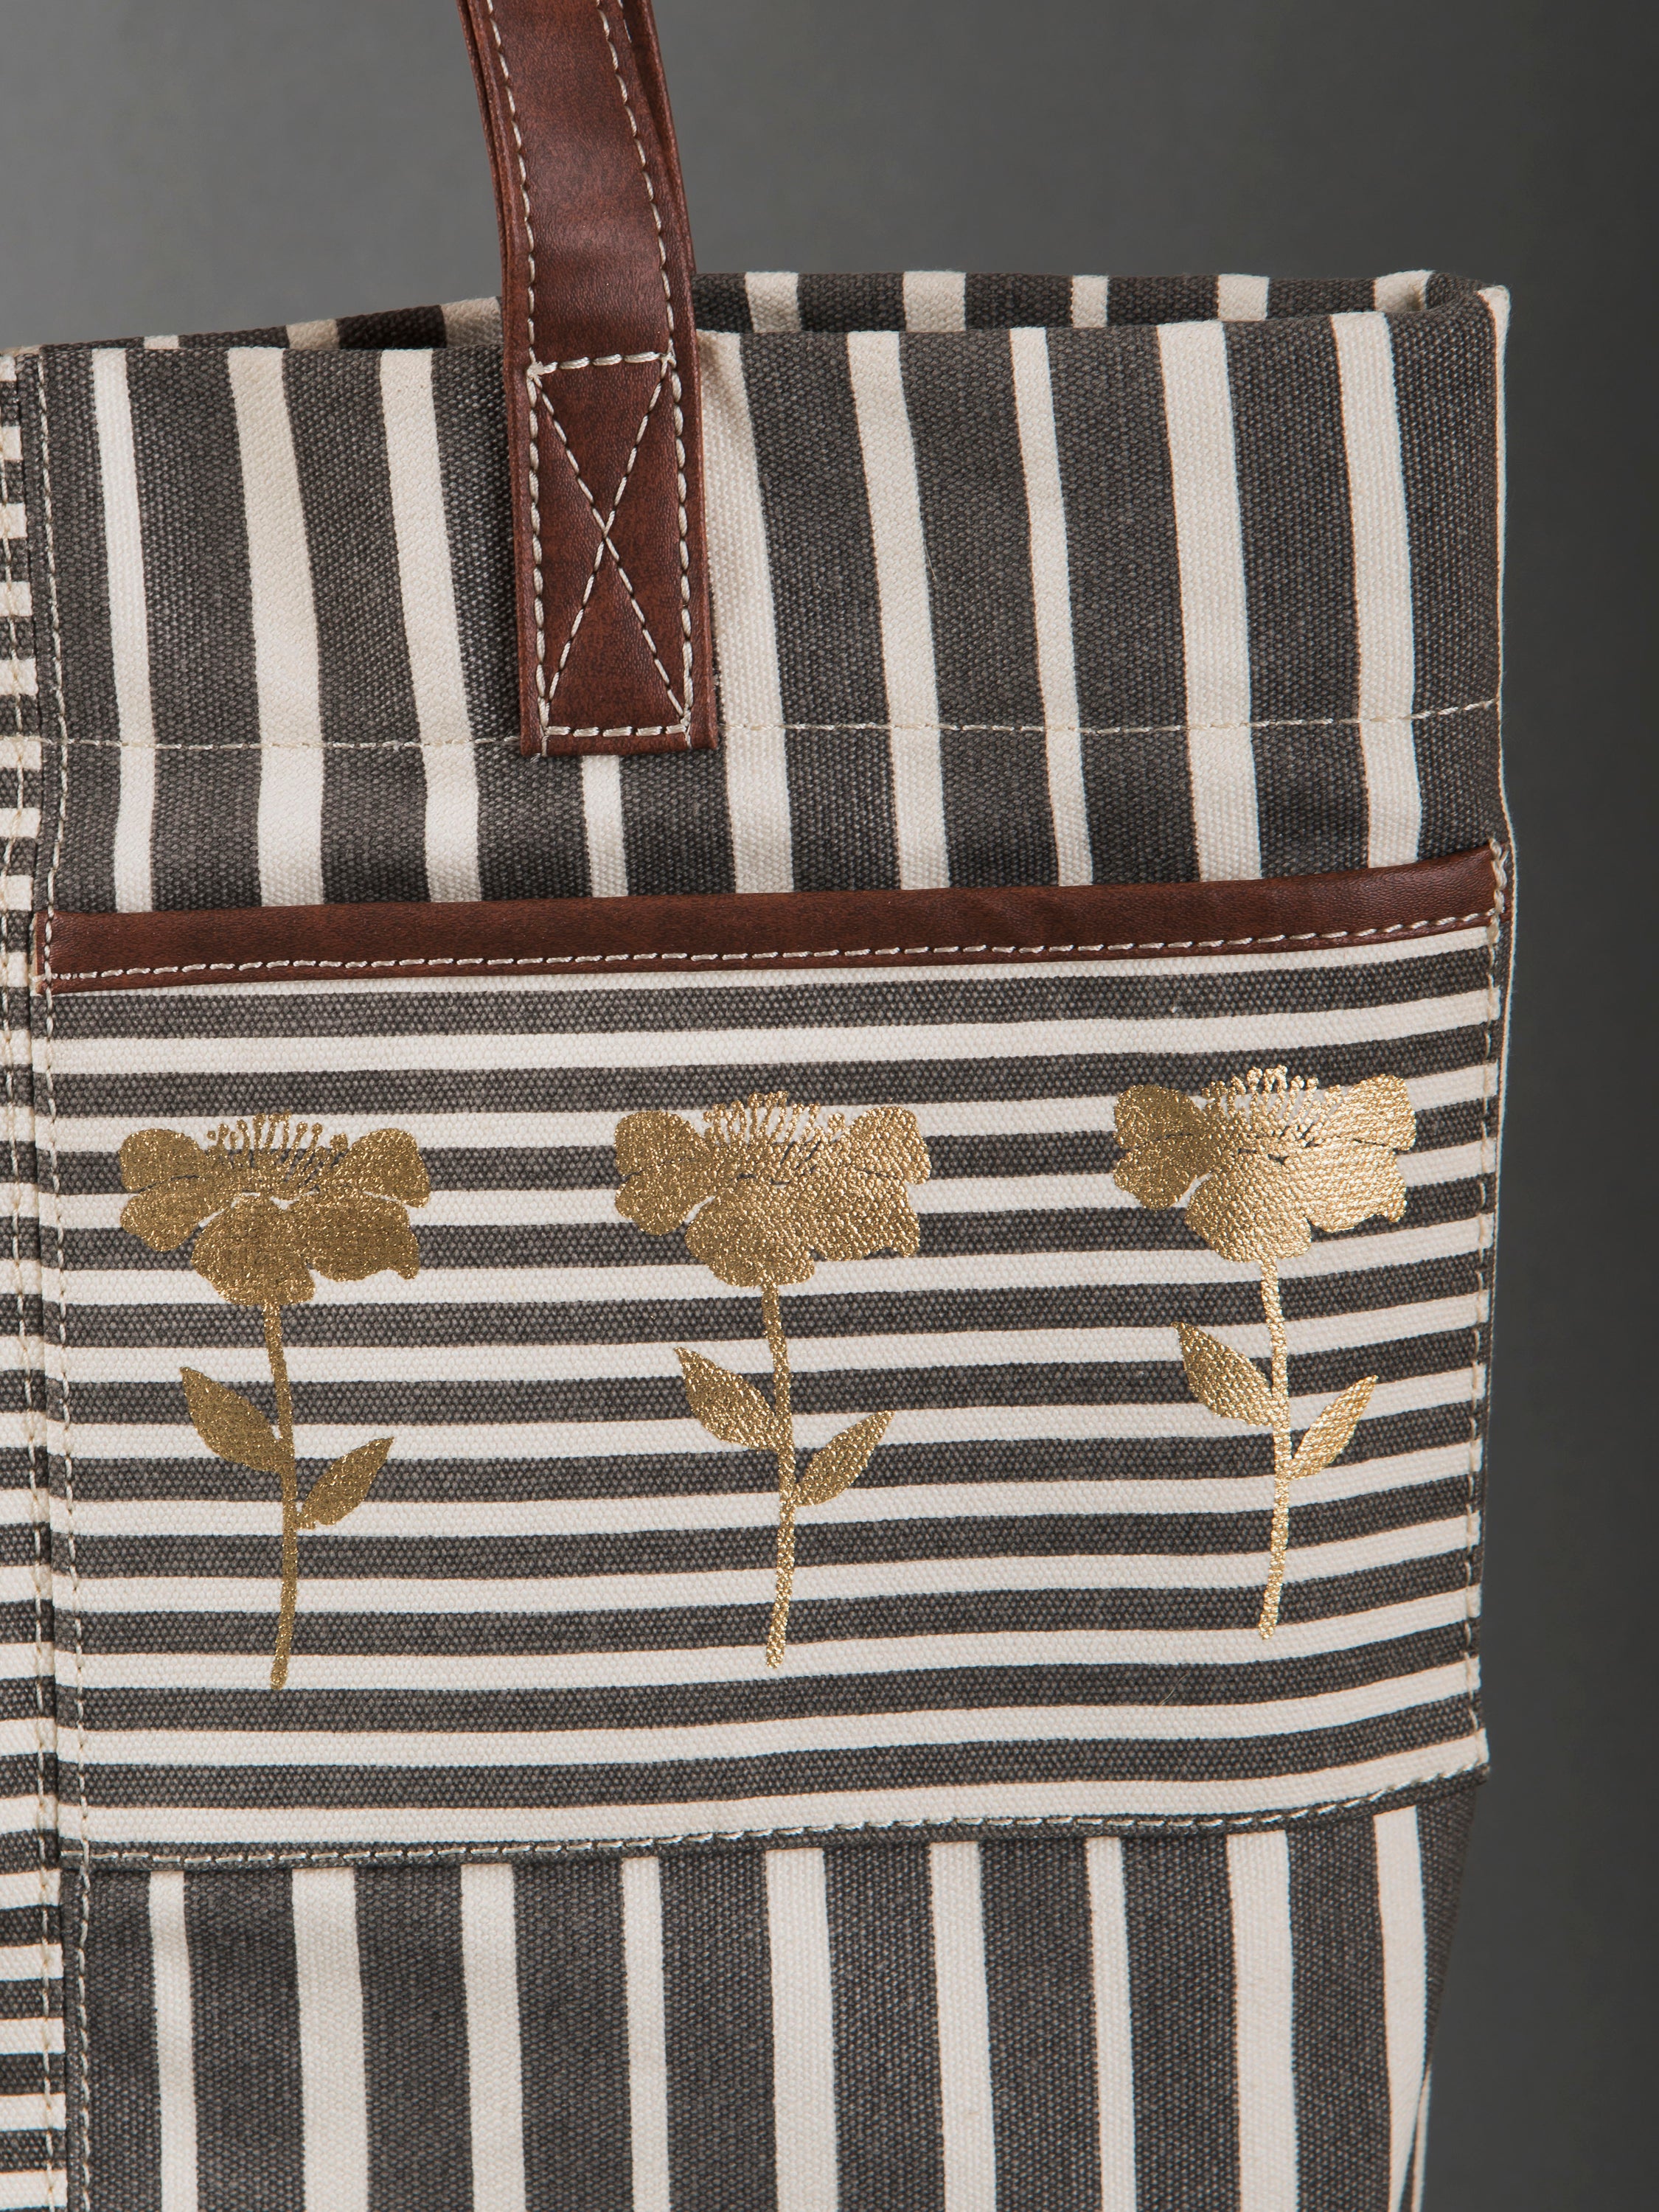 NEW IL BISONTE WOMEN'S FLAT TOTE BAG IN MULTICOLORED STRIPED COTTON CA –  Galleria di Lux